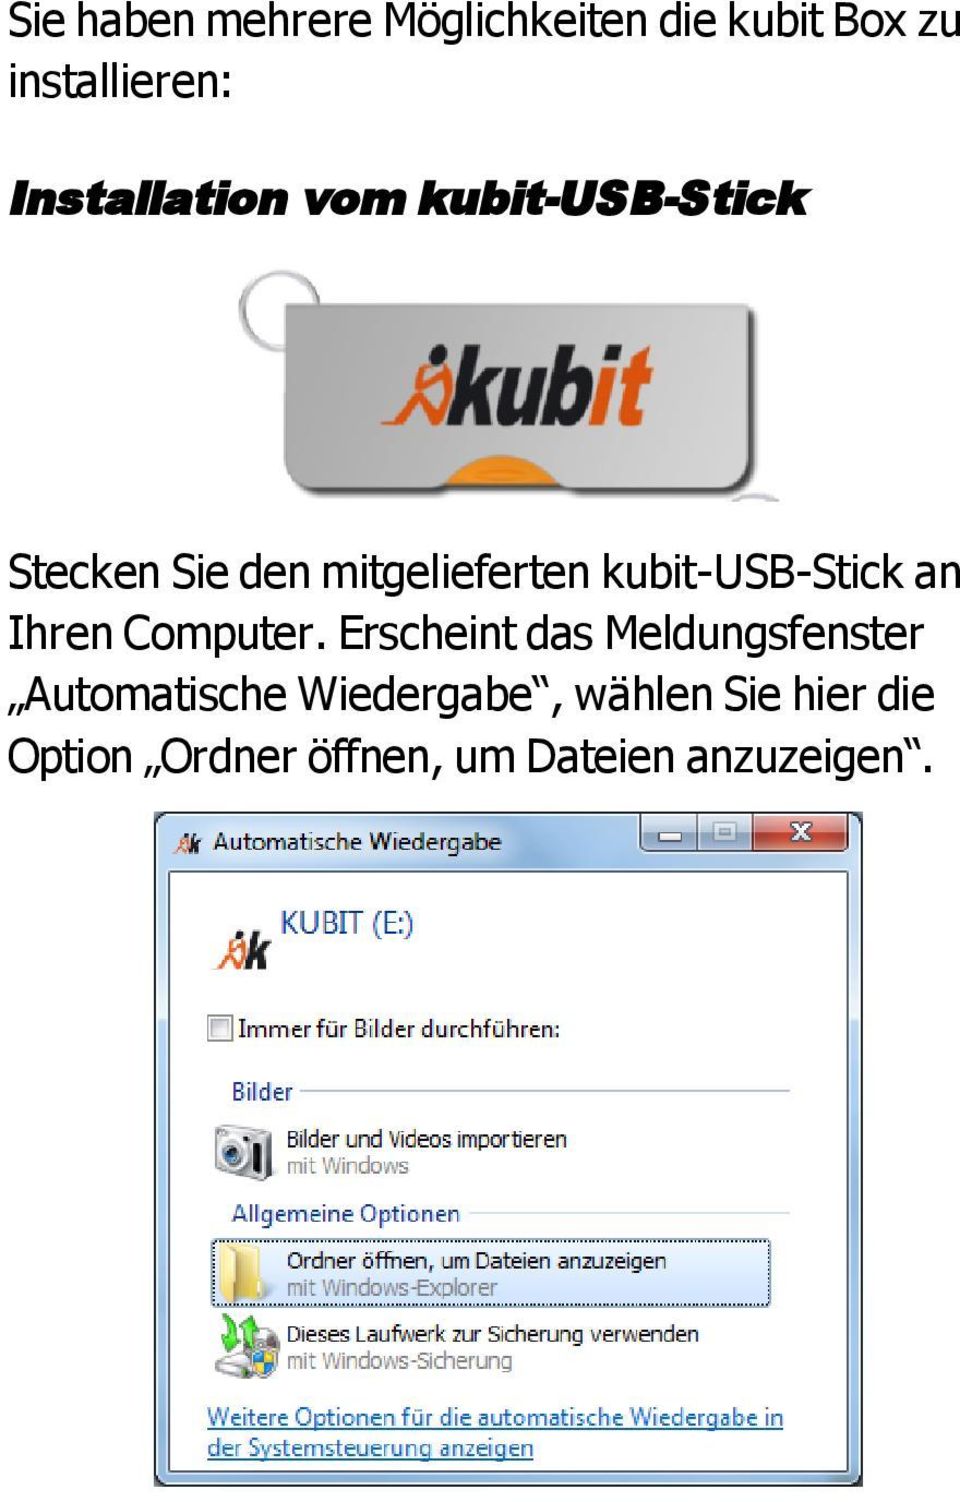 kubit-usb-stick an Ihren Computer.